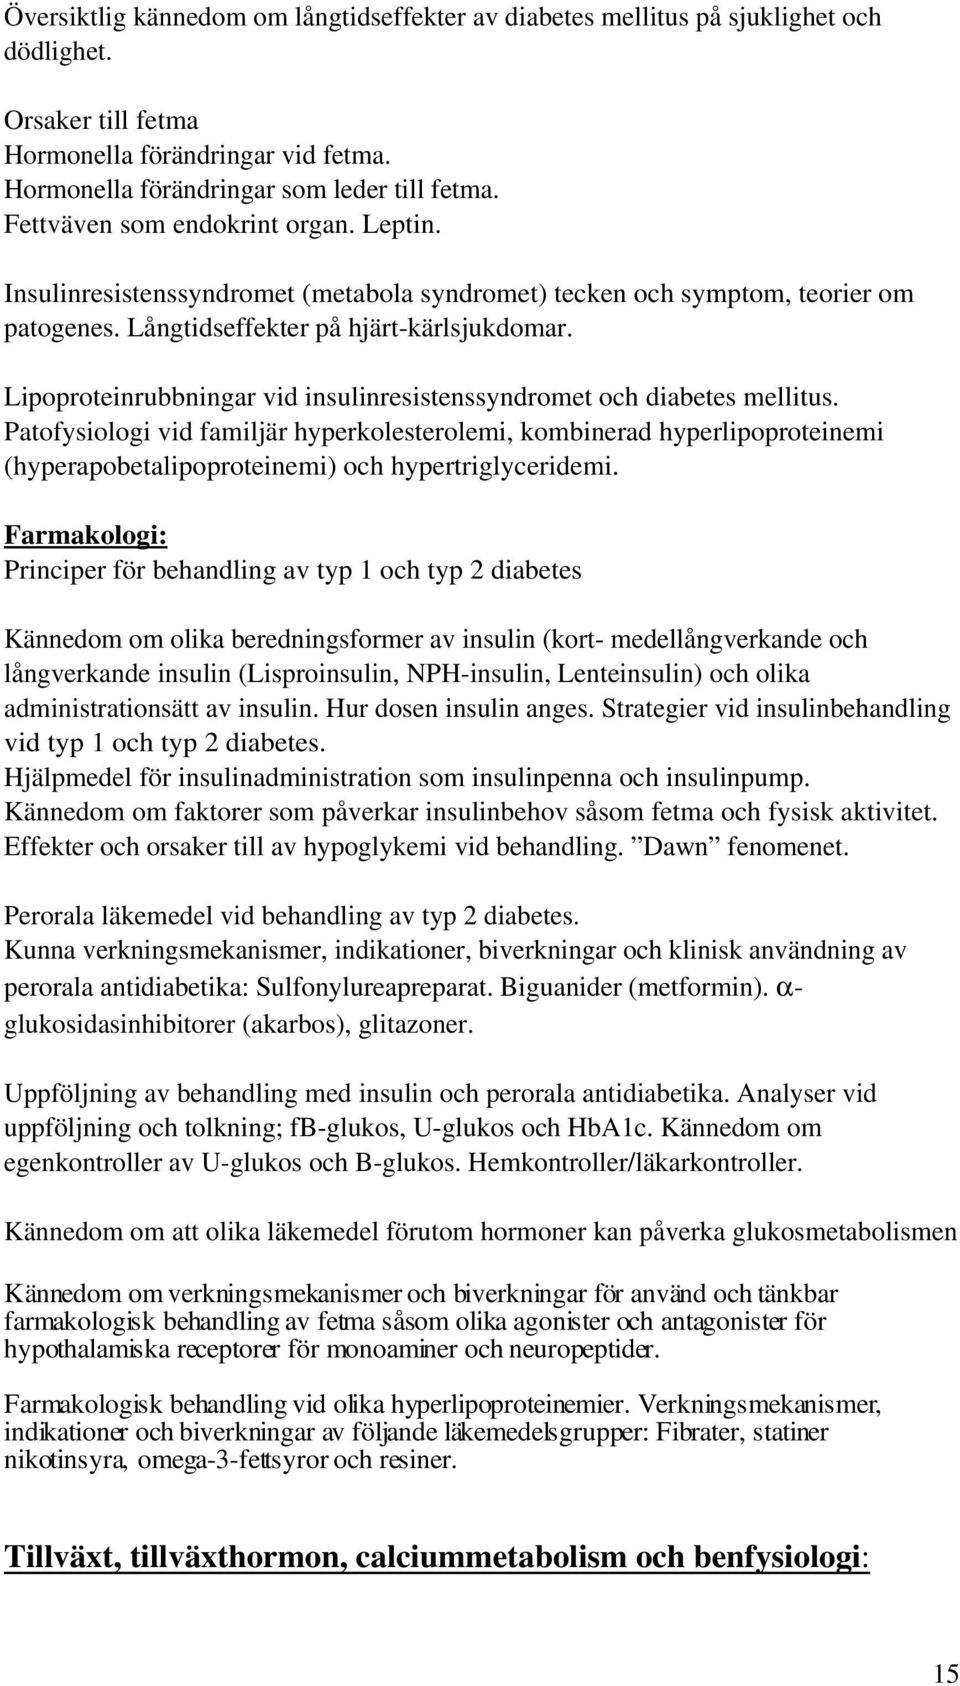 Lipoproteinrubbningar vid insulinresistenssyndromet och diabetes mellitus.